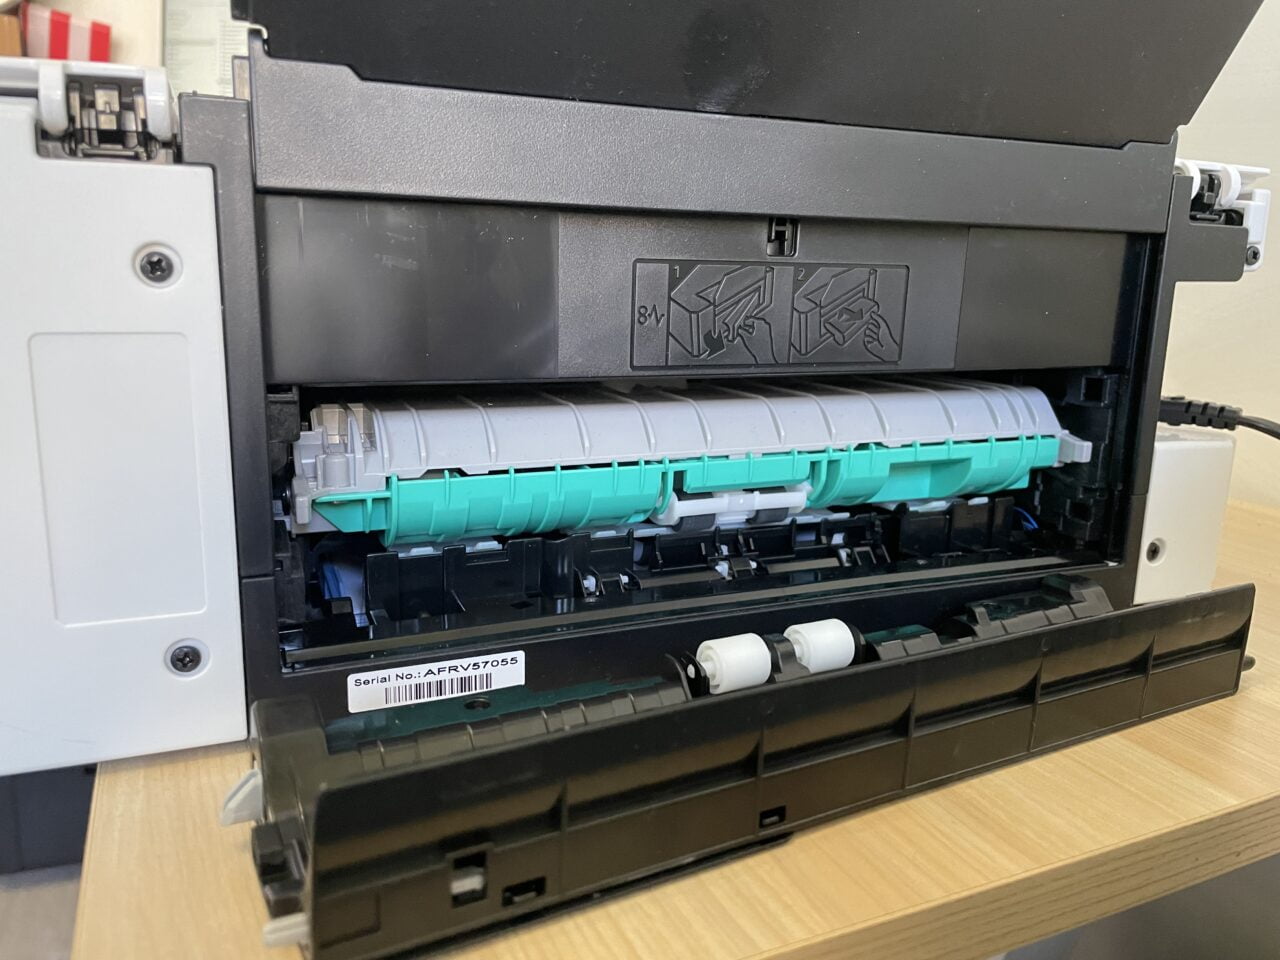 Otwarta drukarka laserowa z widocznym wkładem z tonerem i instrukcjami wymiany wkładu na klapie.